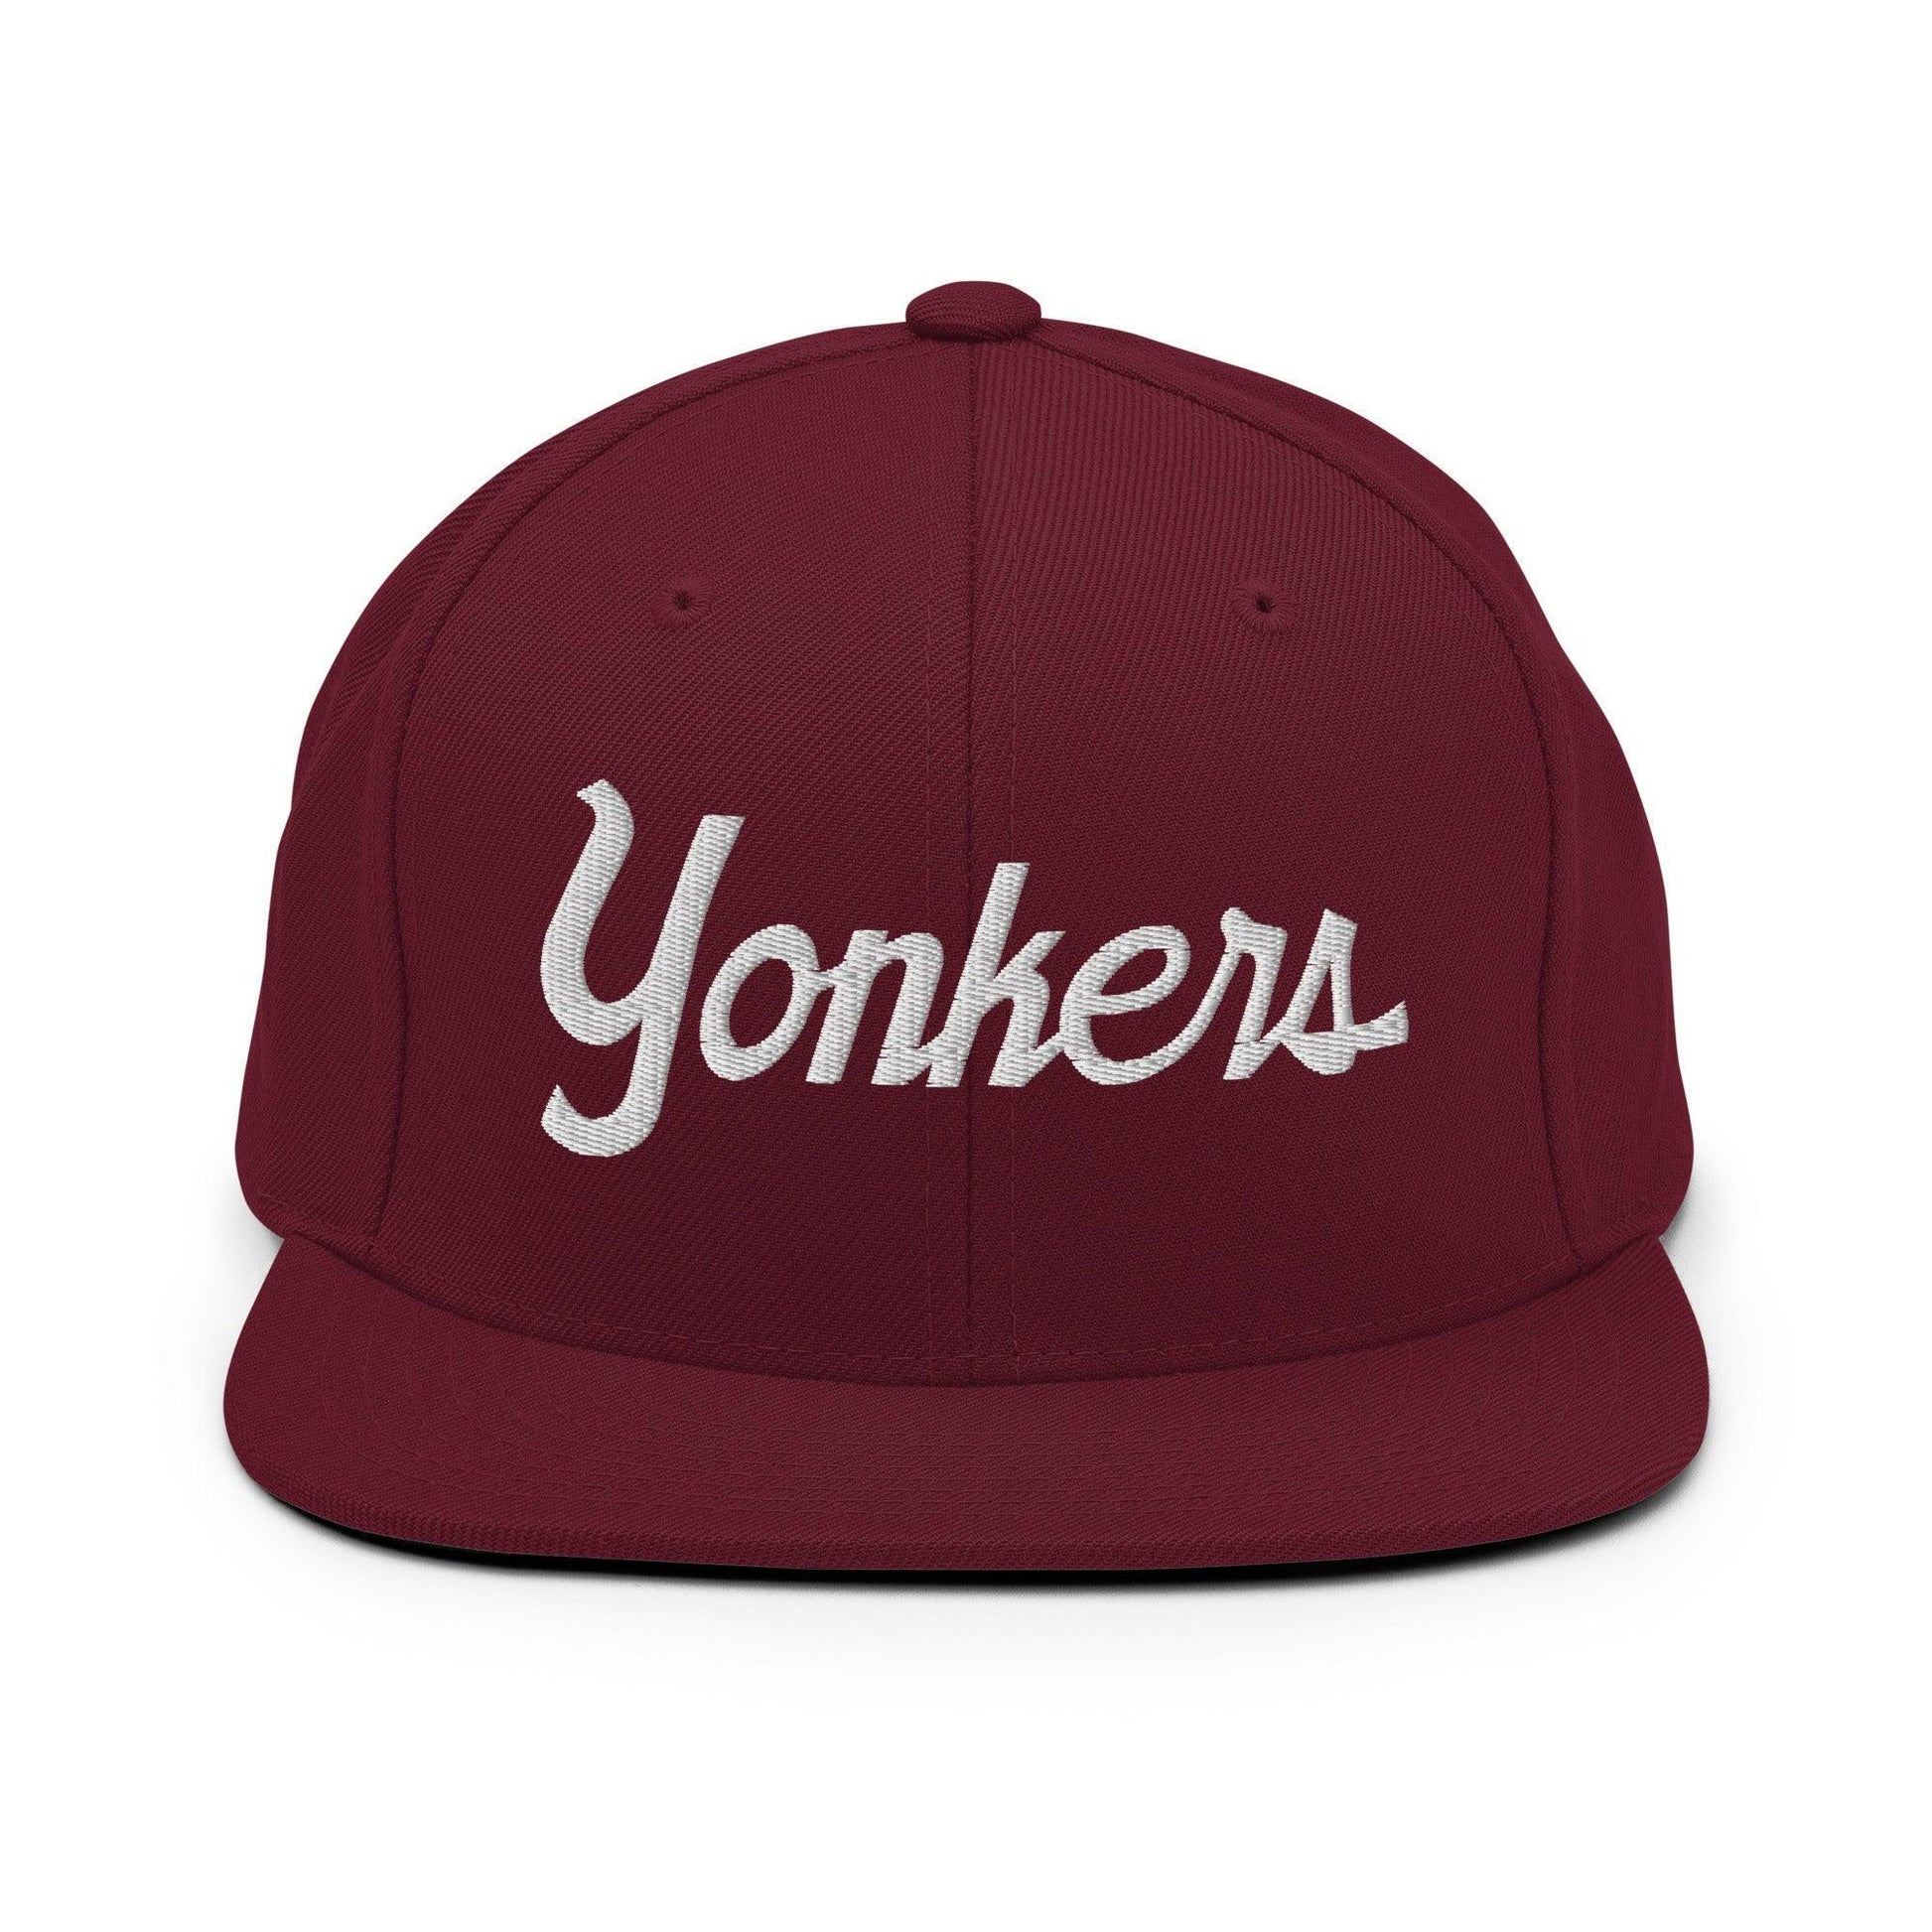 Yonkers Script Snapback Hat Maroon